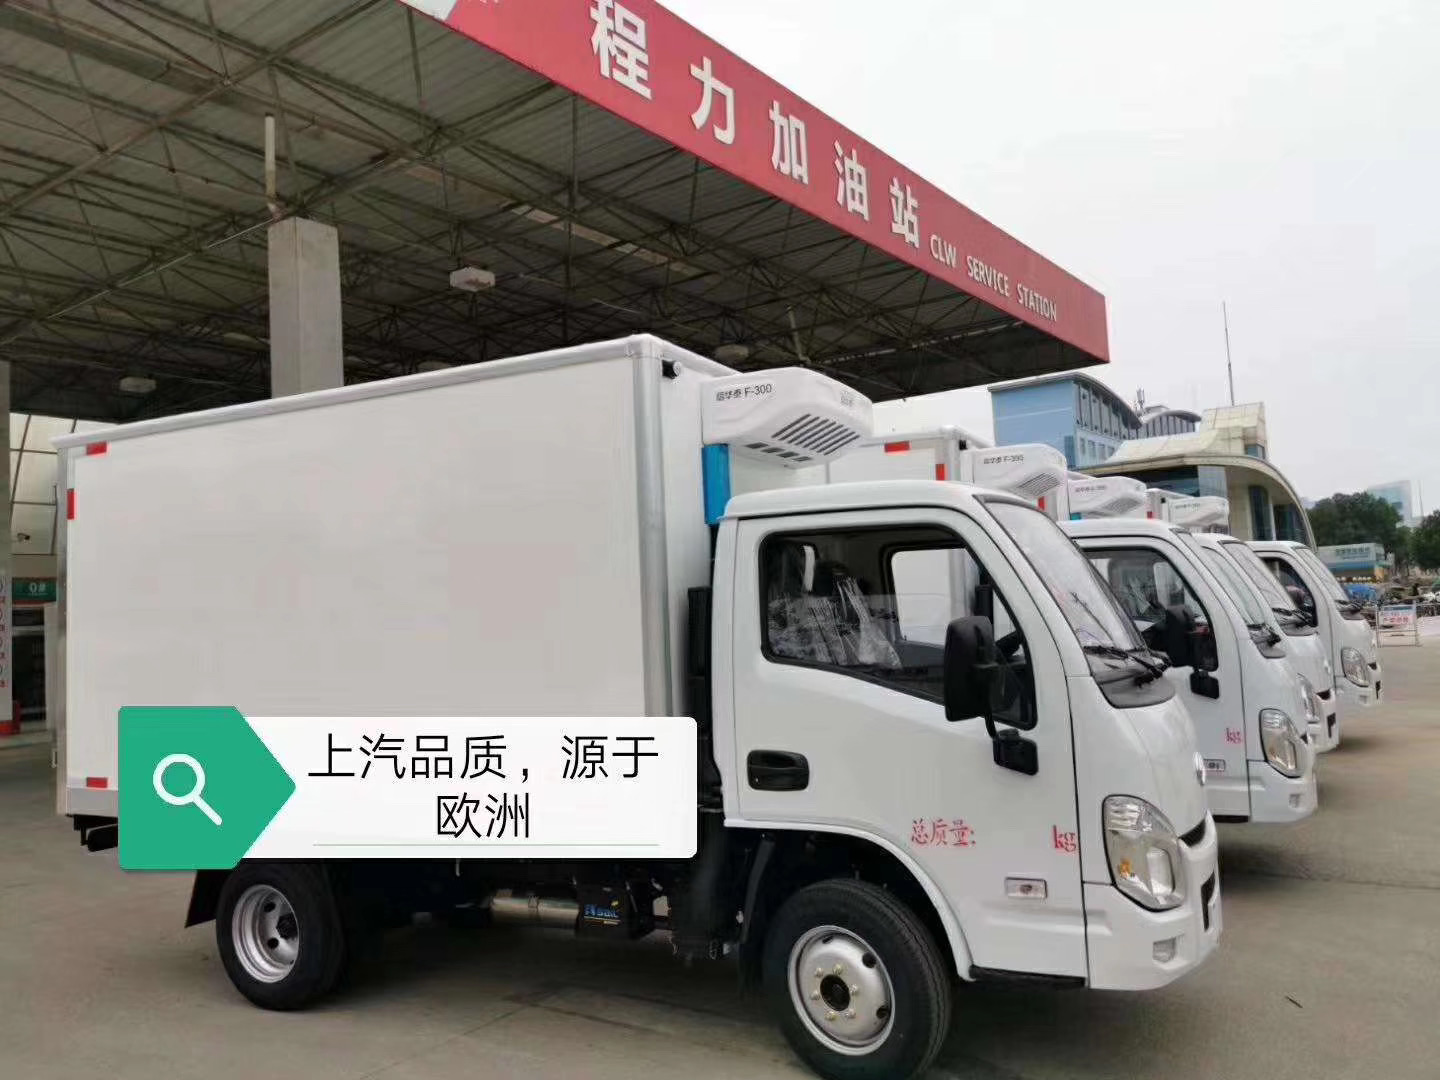 国六跃进小福星S70冷藏车为什么如此受欢迎？ (5)